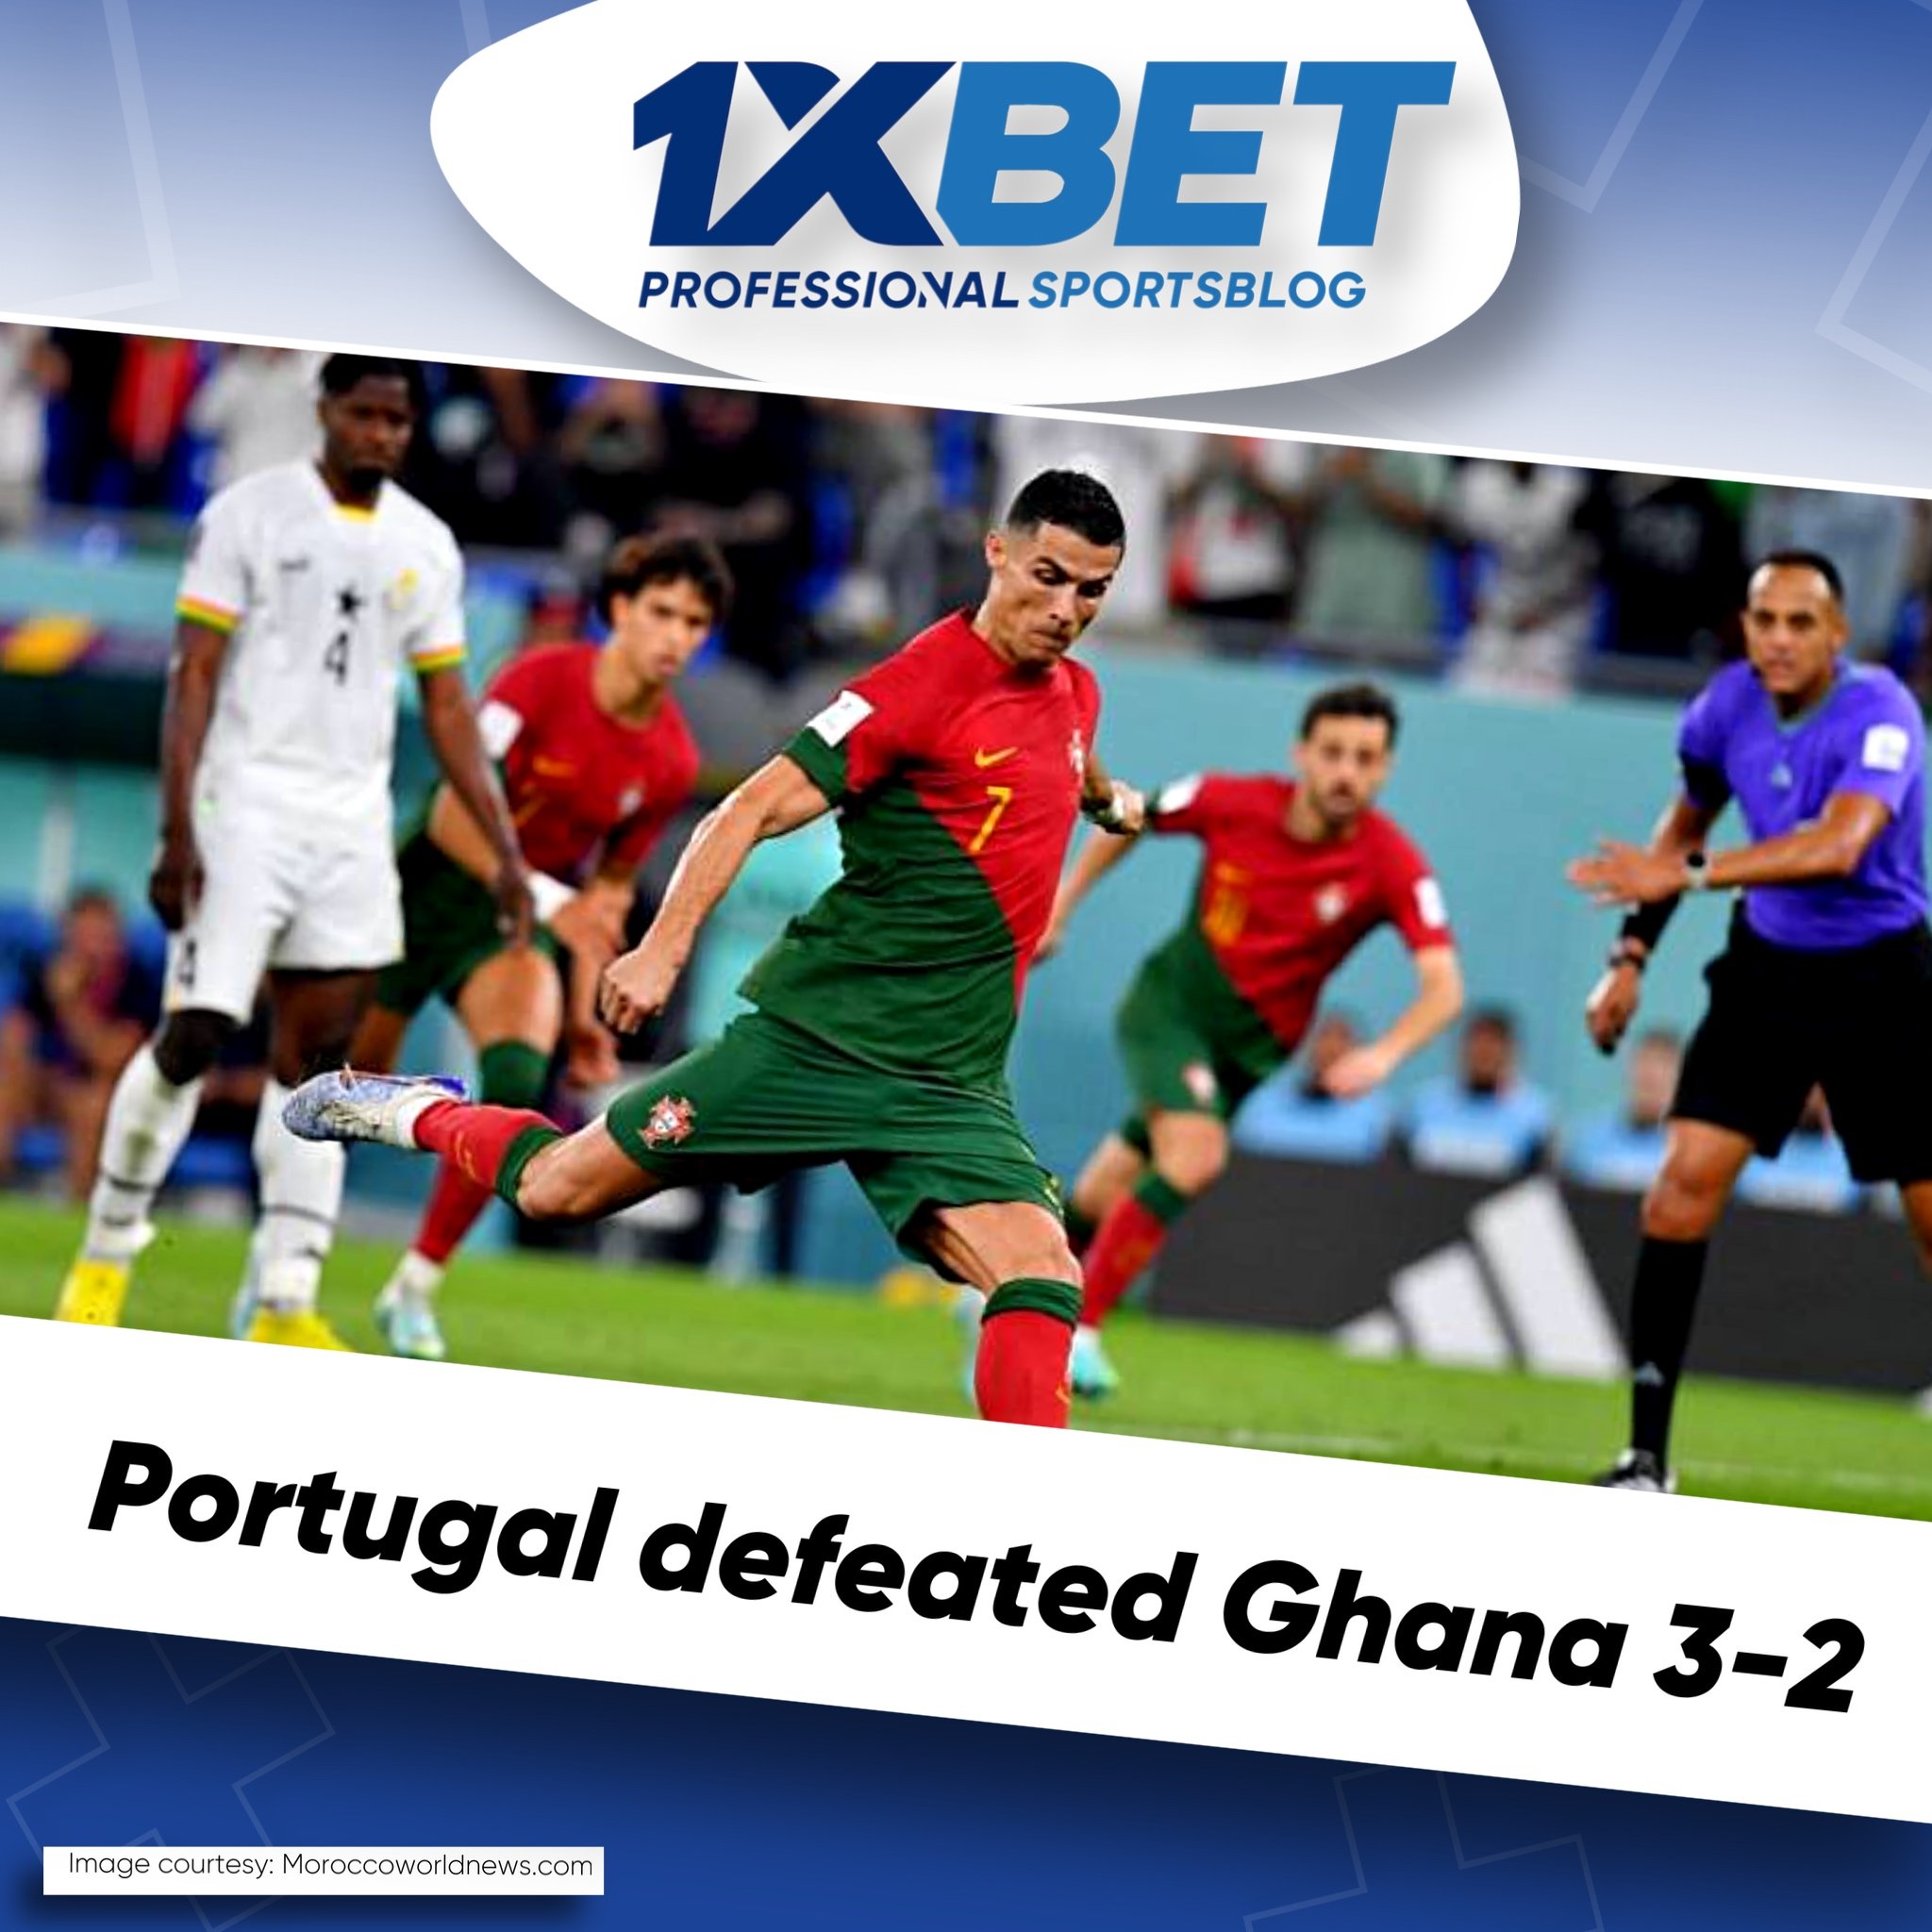 Portugal defeated Ghana 3-2